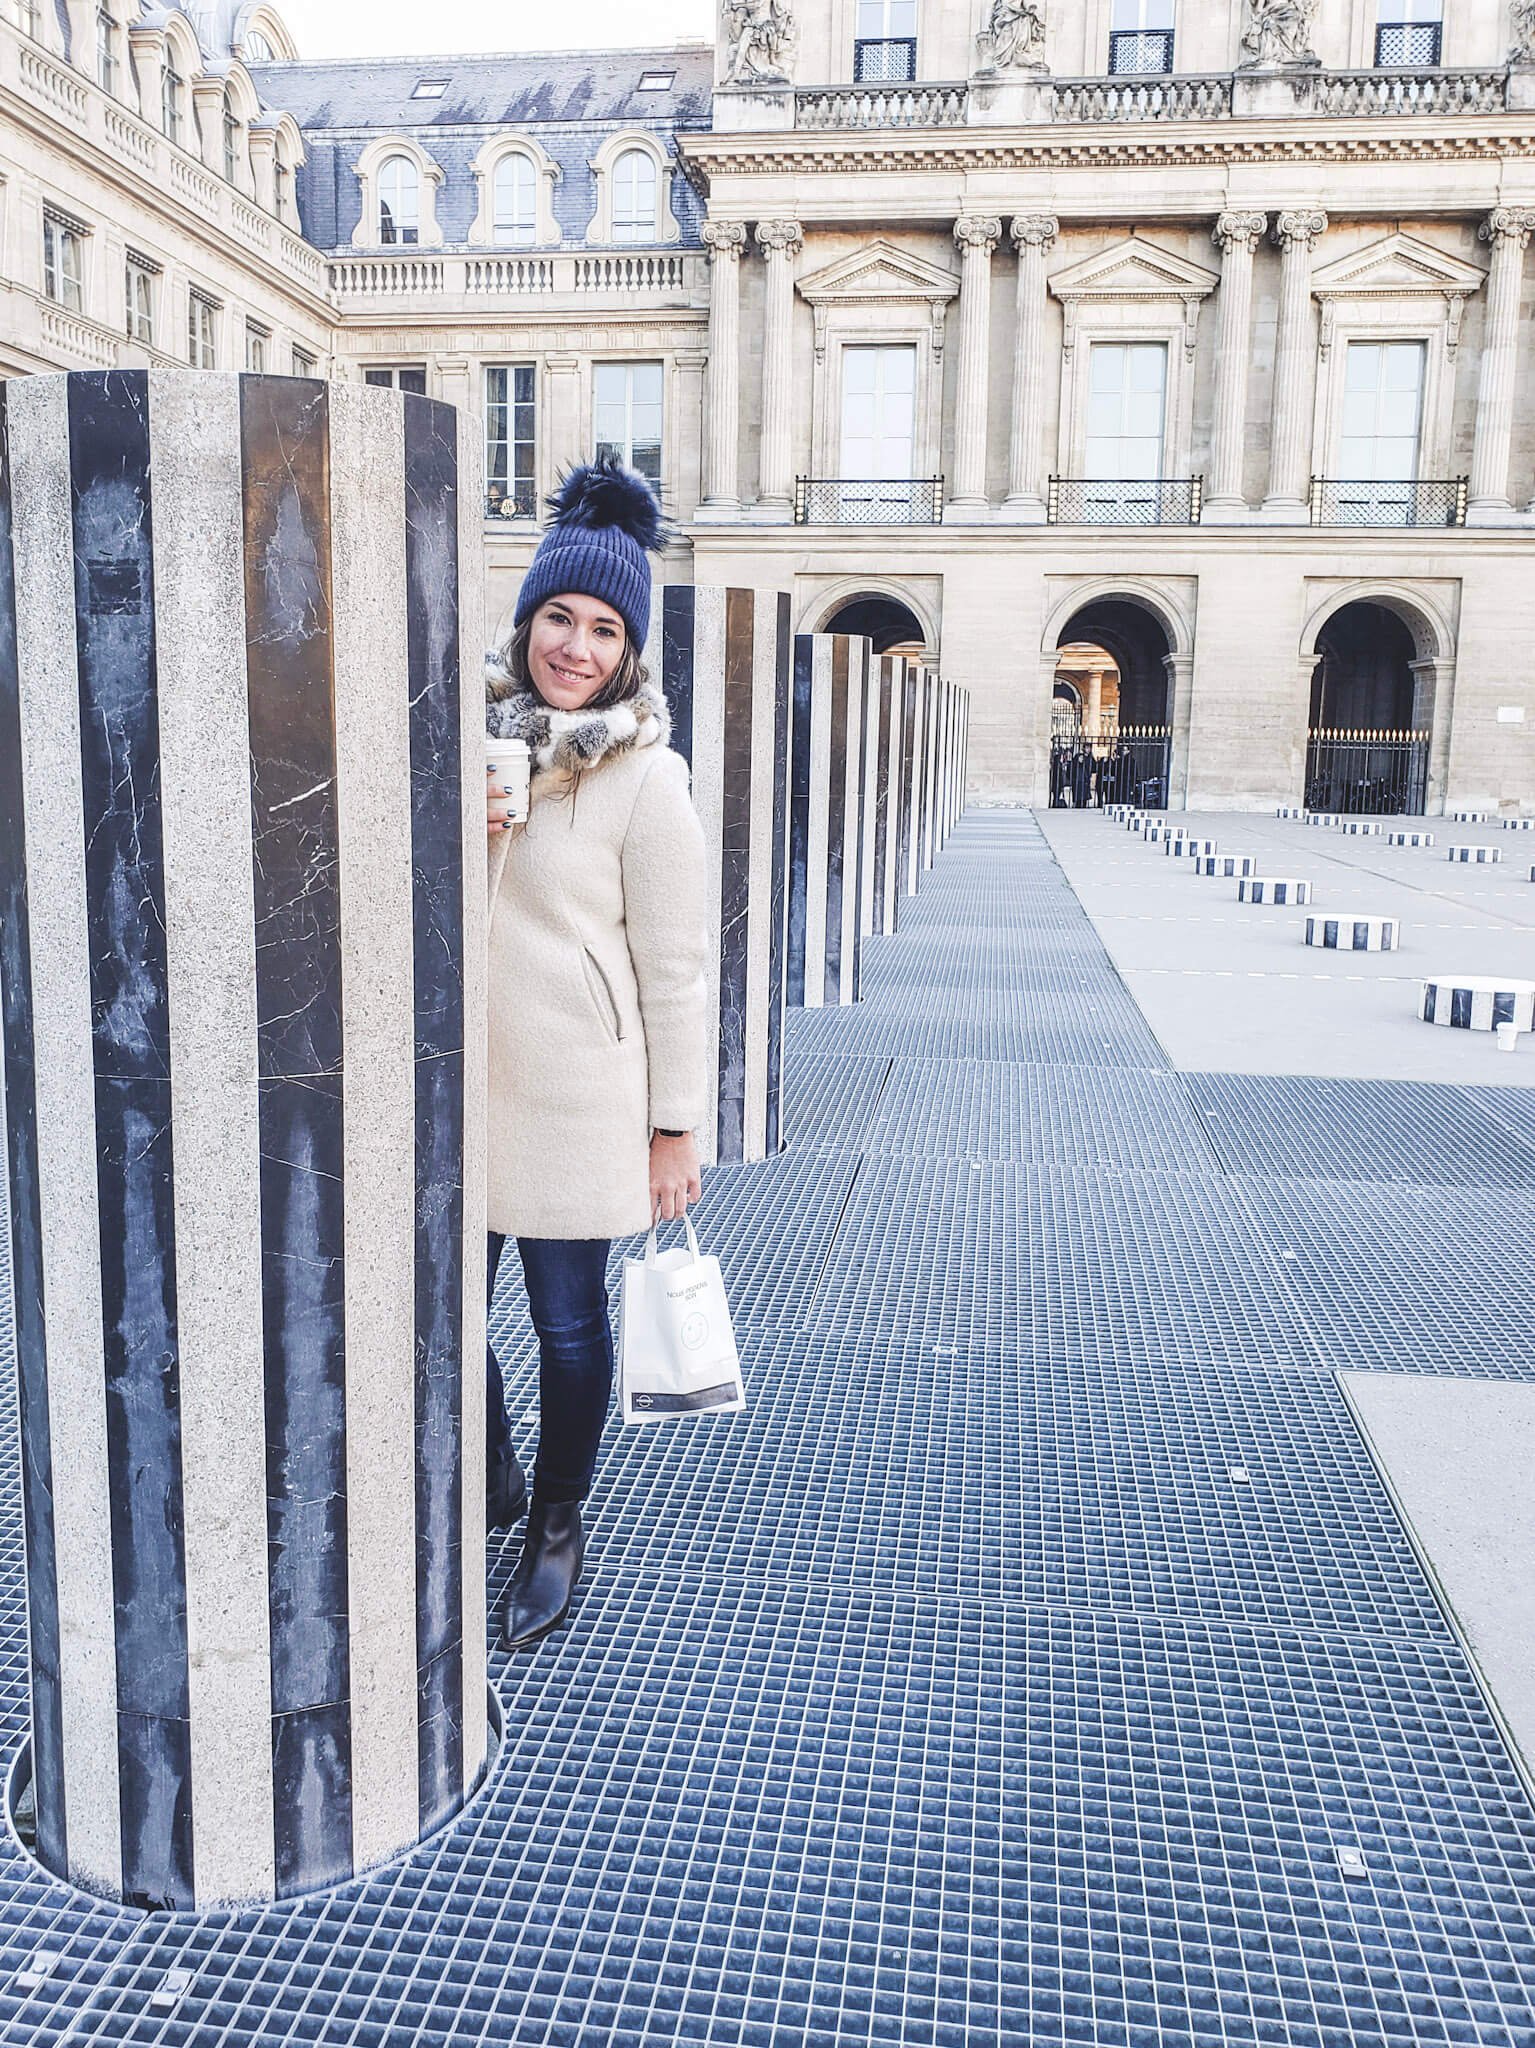 Striped Pillars at Palais Royal in Paris